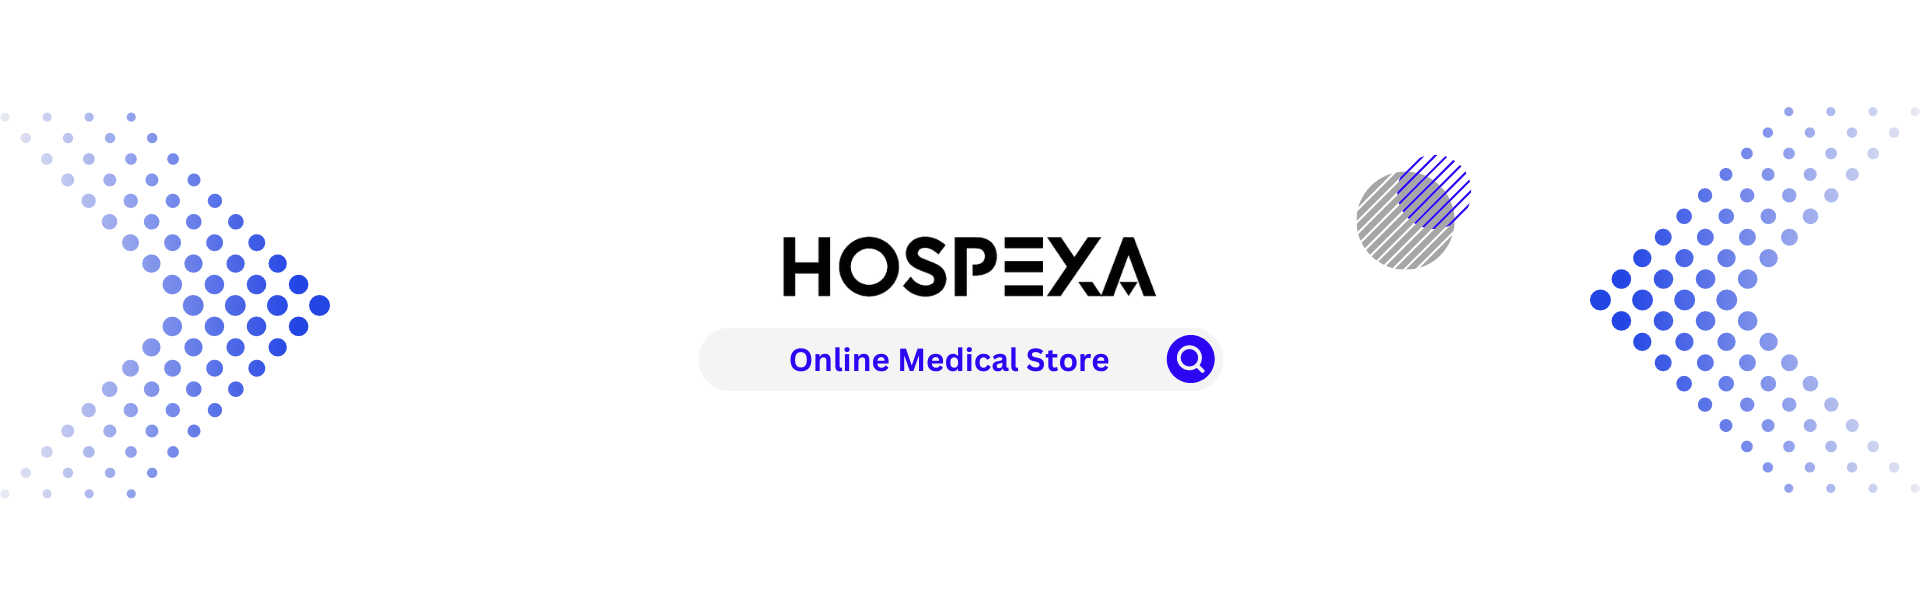 فروشگاه اینترنتی هاسپکسا|مرجع خرید تجهیزات پزشکی